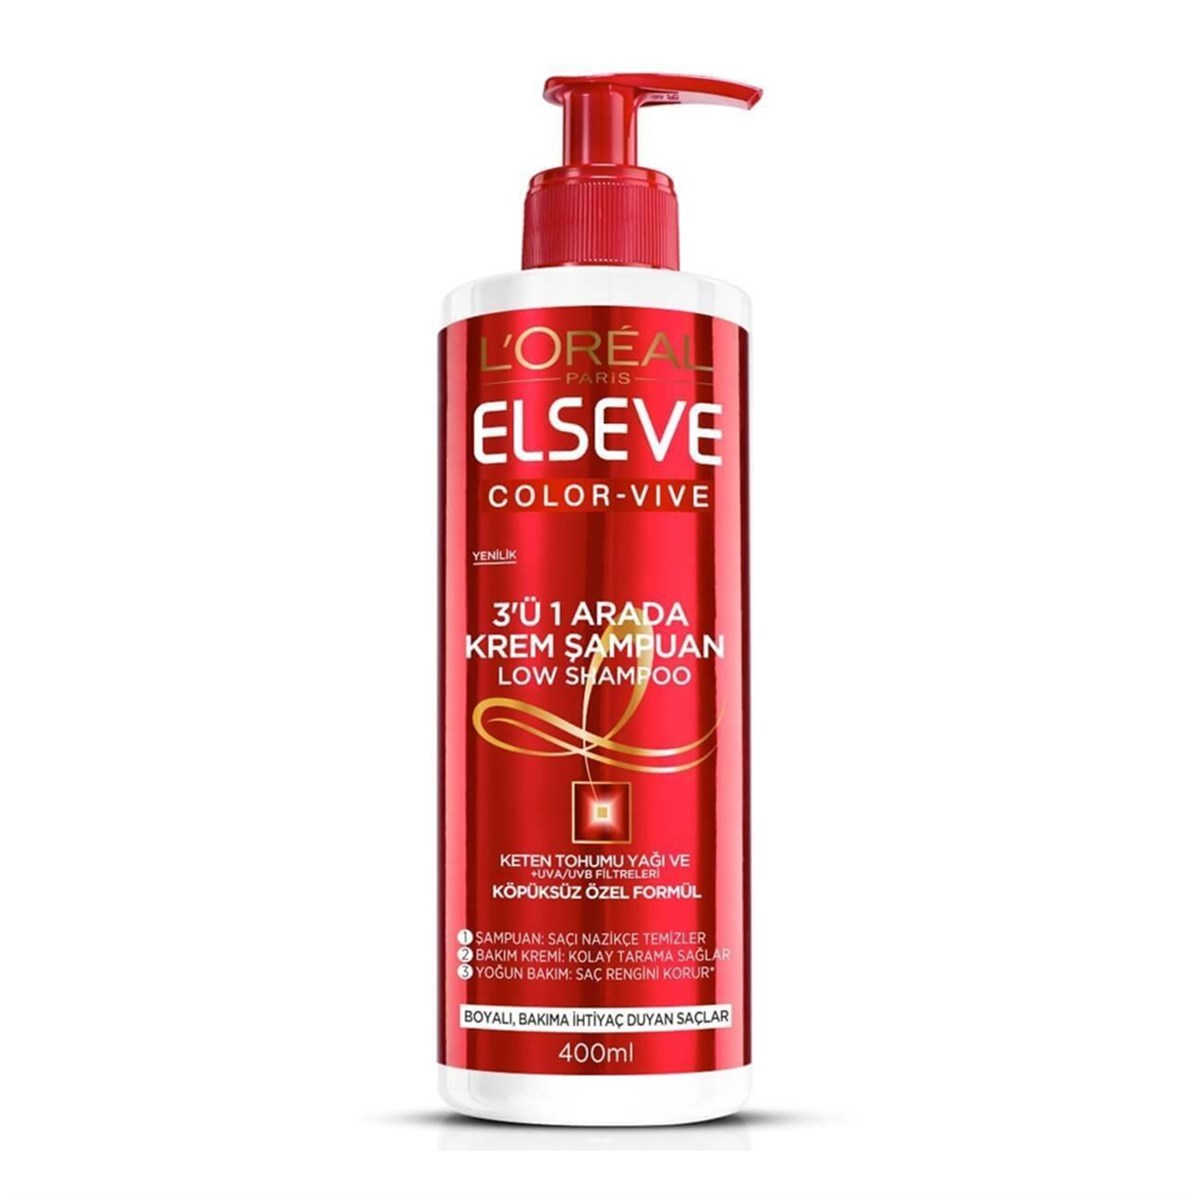 Elseve Color-Vive 3'ü 1 Arada Krem Şampuan 400ml - Platin